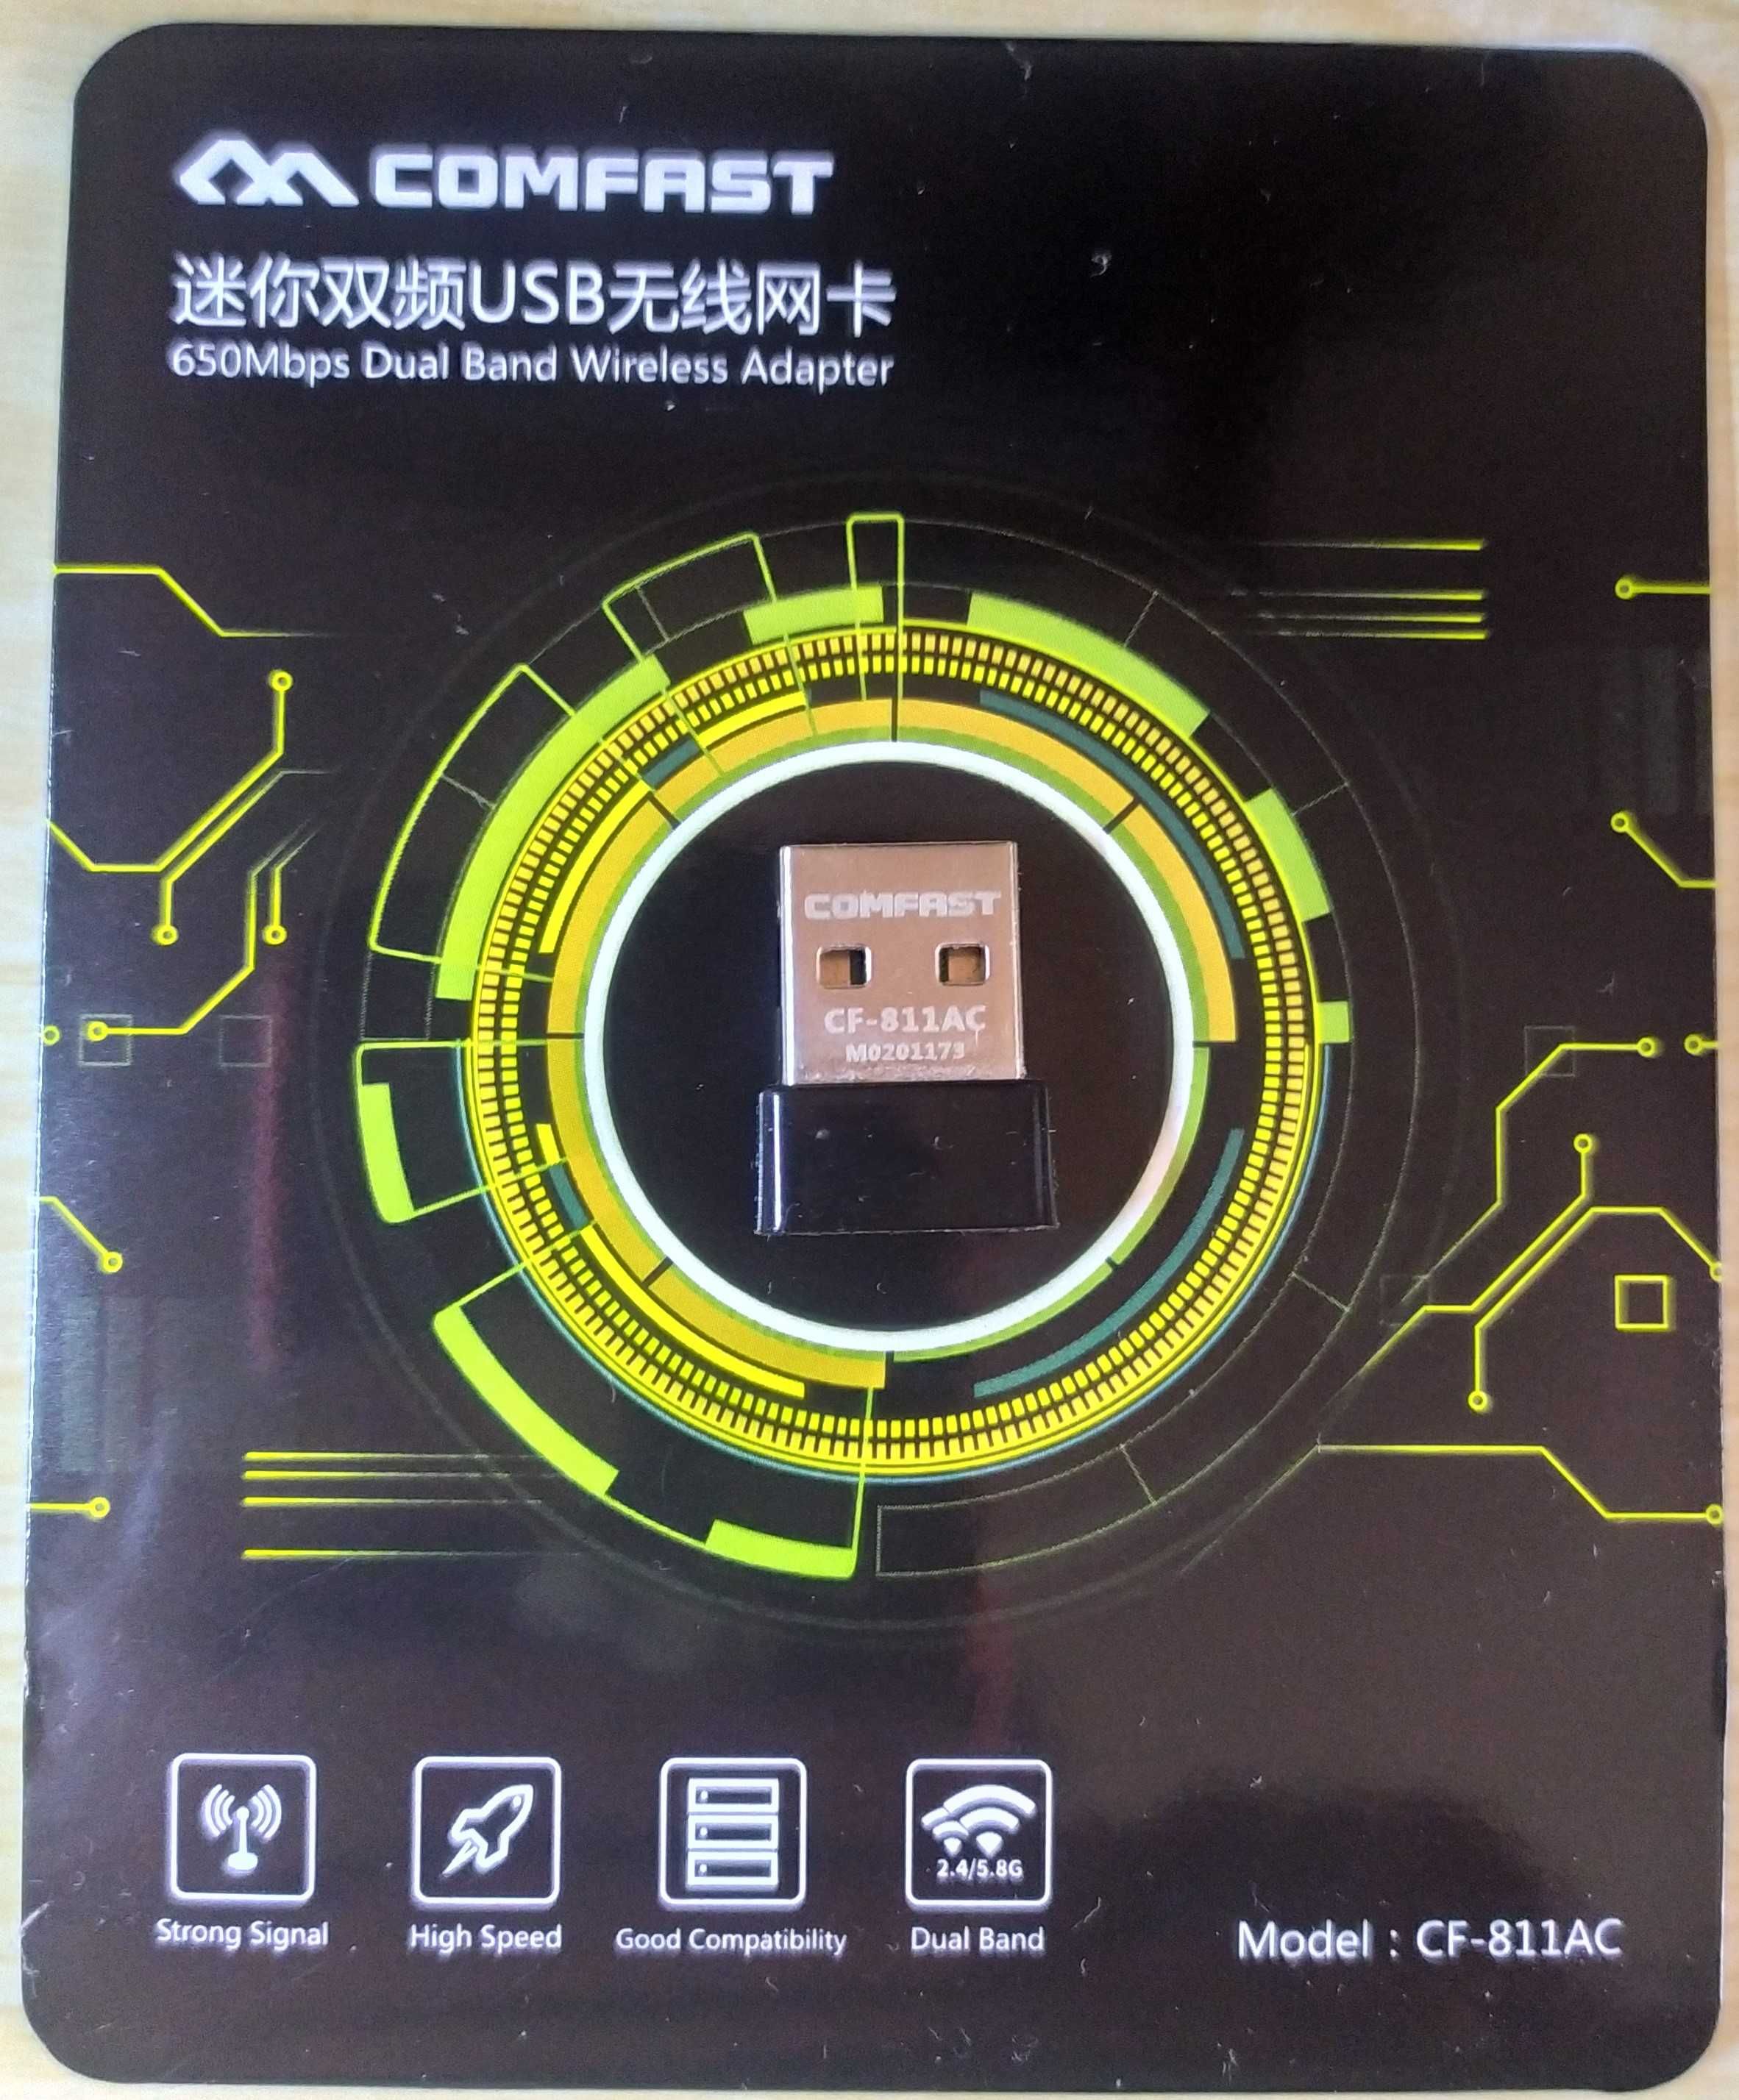 USB Wi-Fi адаптер Comfast CF-811AC 2.4 / 5.8 Ghz 650Mbps